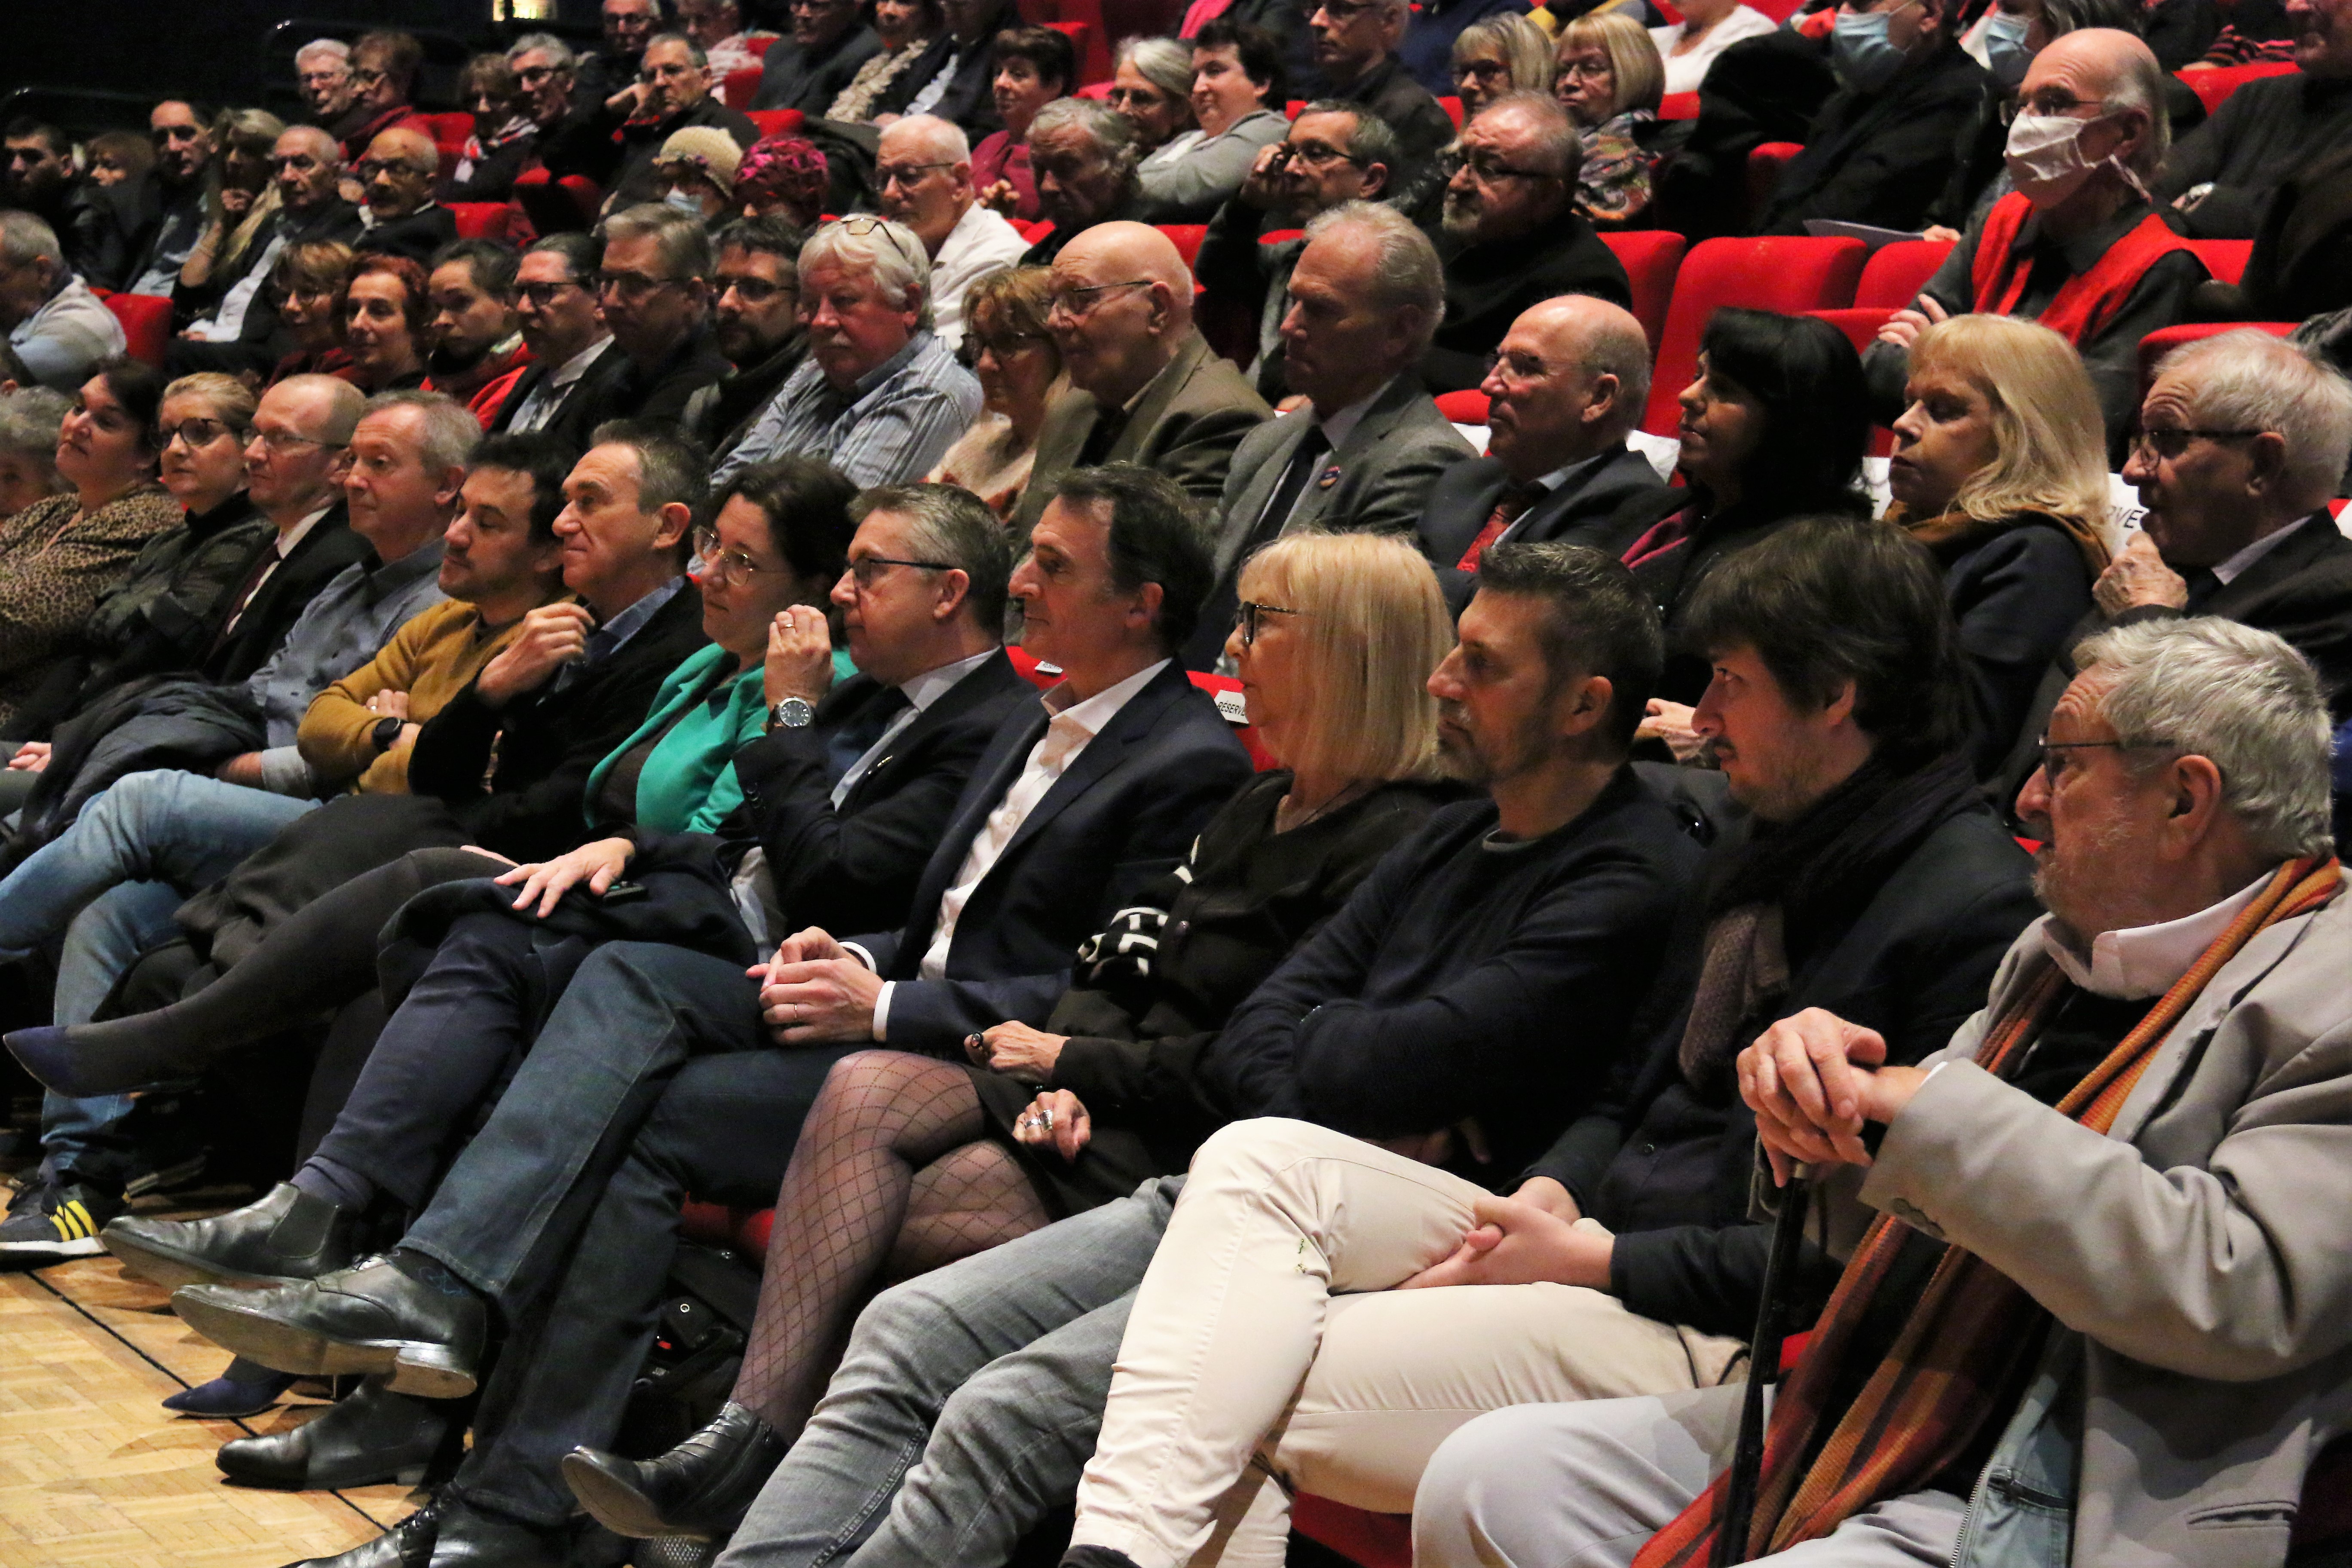 La députée de la circonscription Cyrielle Chatelain, le président de la Métropole Christophe Ferrari et le maire de Grenoble Eric Piolle (au centre, de gauche à droite), figuraient notamment parmi les personnalités et acteurs locaux invités à cette cérémonie.